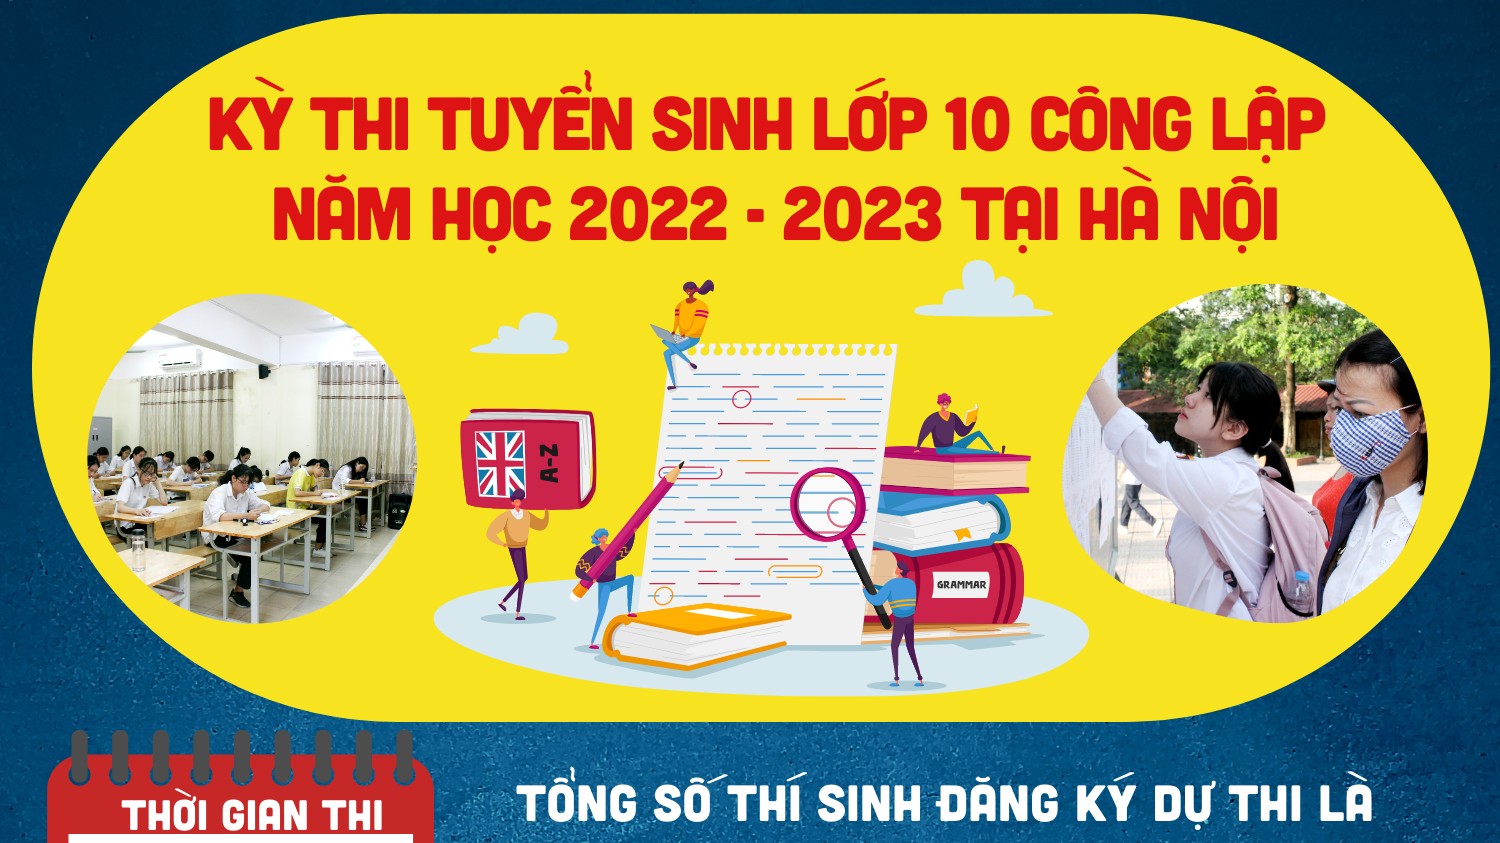 [Infographics] Kỳ thi tuyển sinh lớp 10 công lập năm học 2022 - 2023 tại Hà Nội